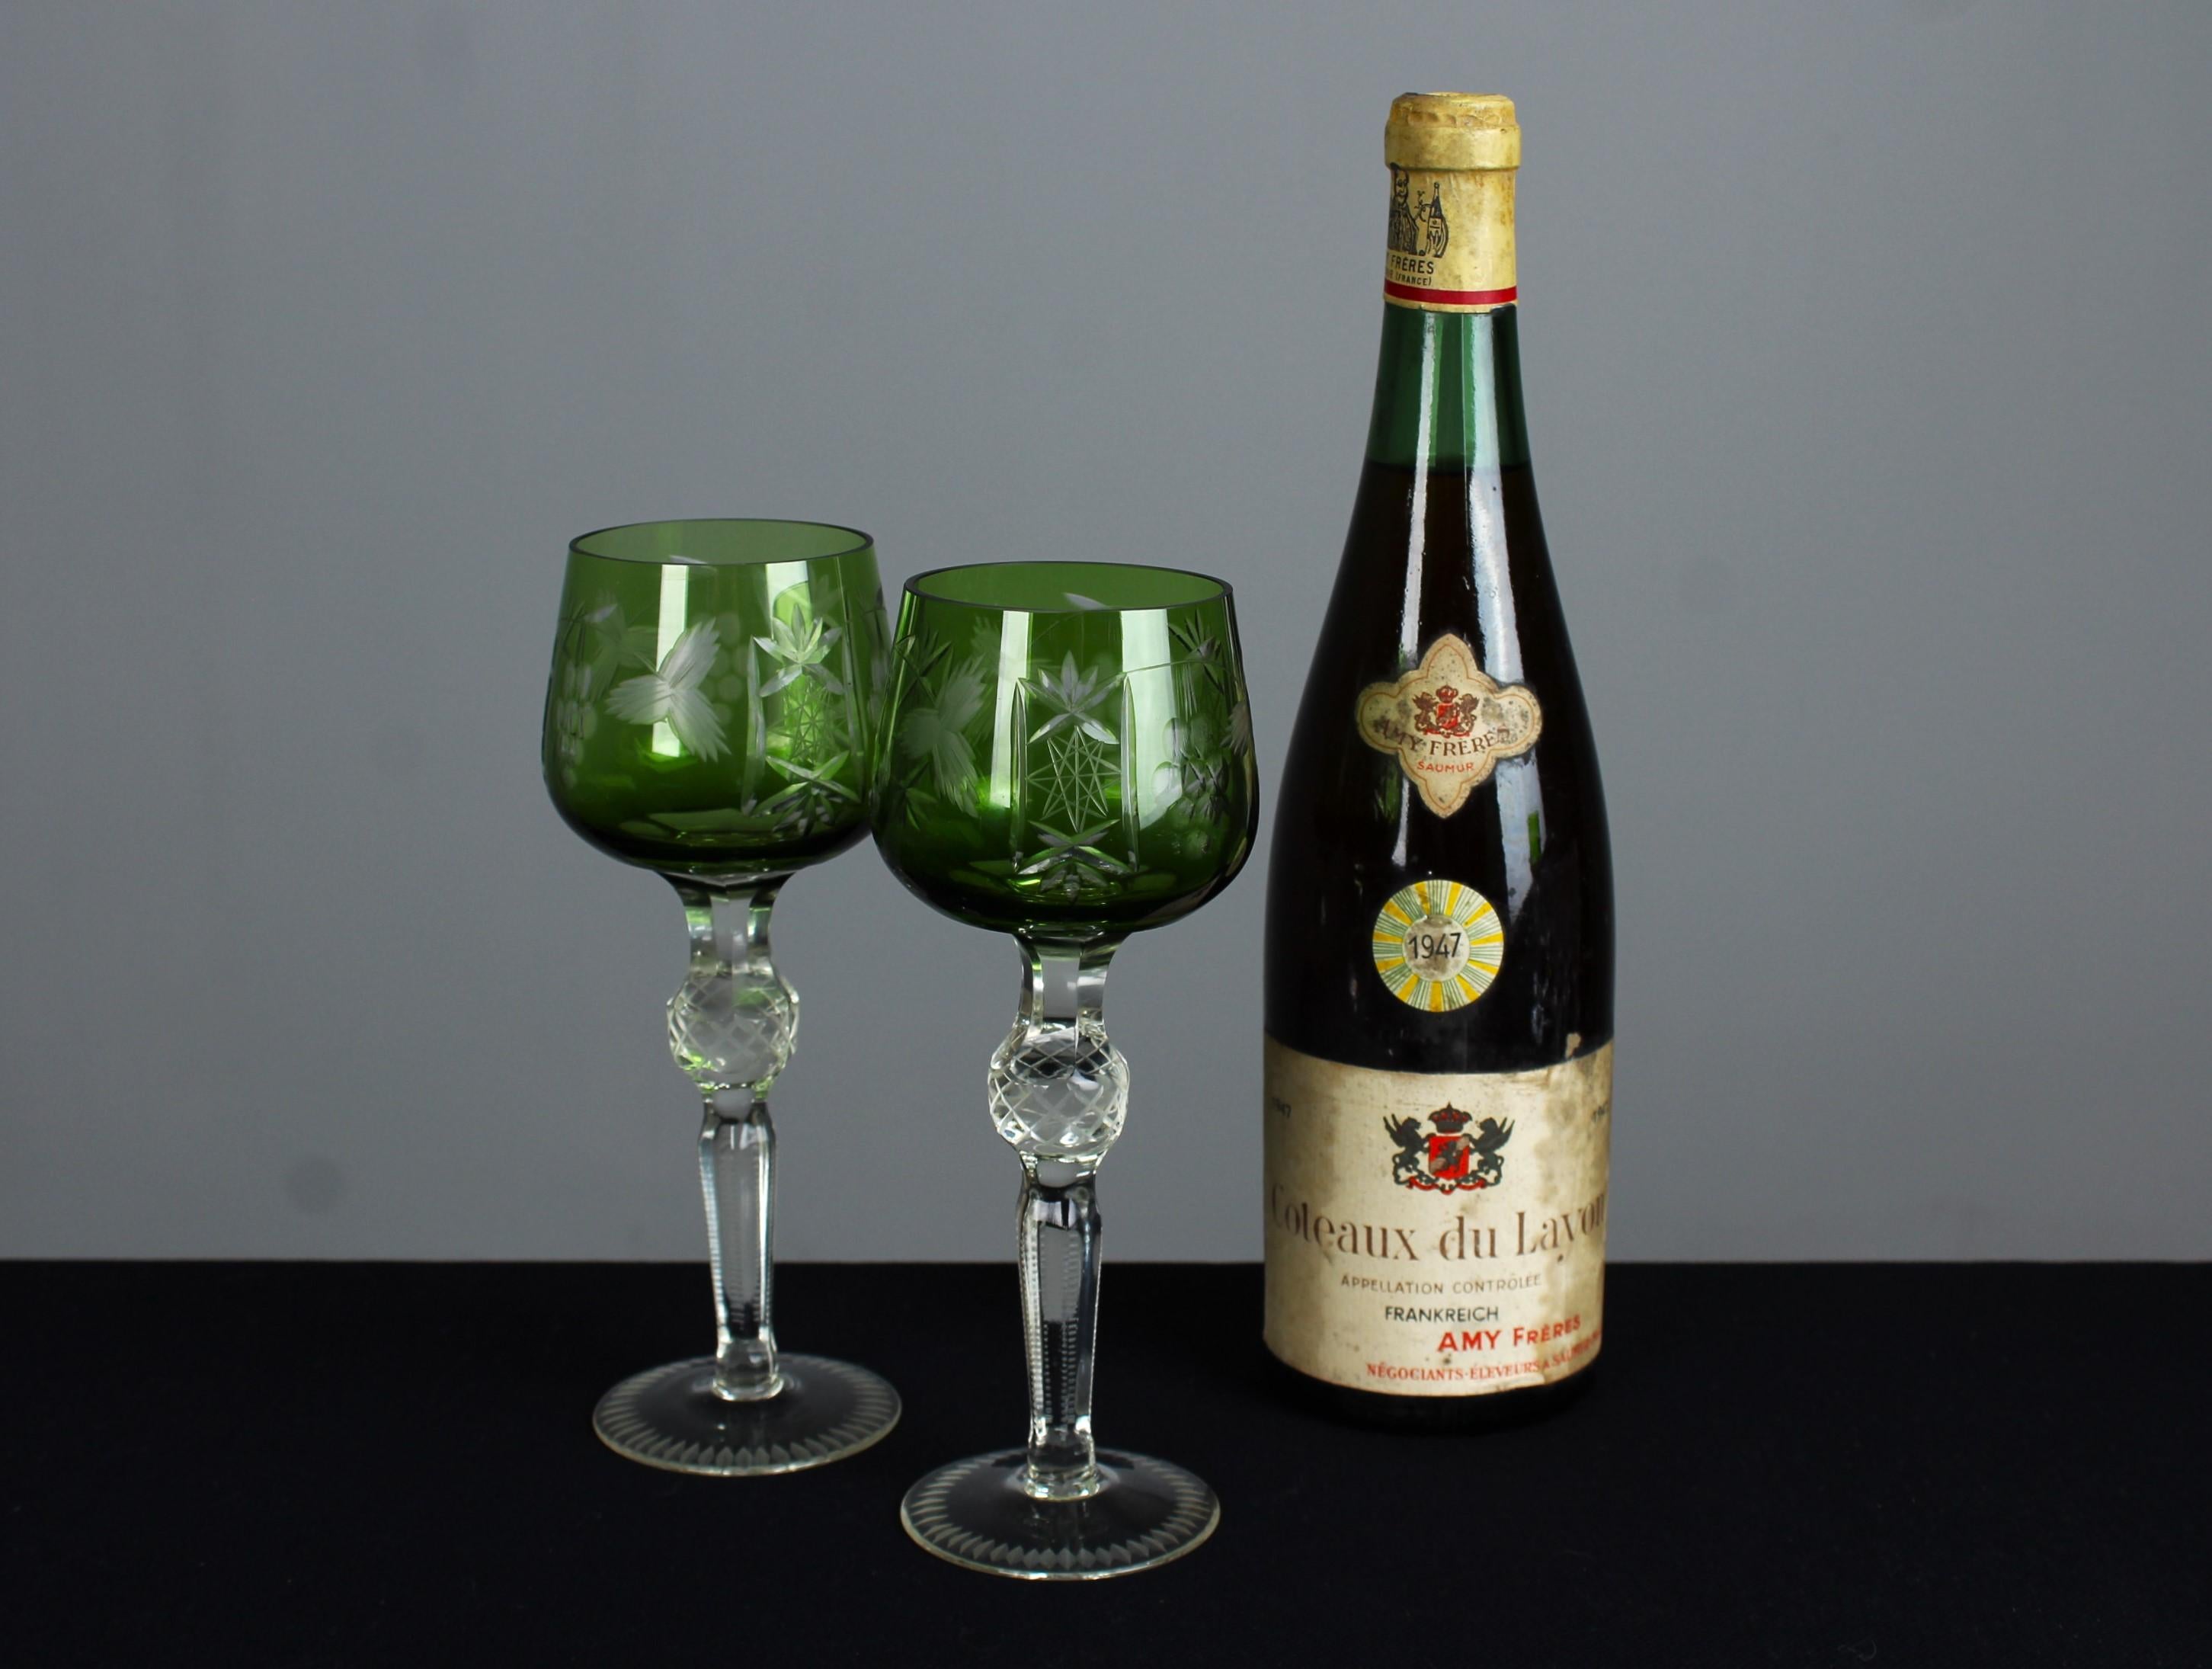 Ein schönes Paar antiker Weingläser mit dekorativem, handgeschnitztem Design. Schönes grün gefärbtes Glas.

An der Wende zum 20. Jahrhundert blühte in Frankreich die Kultur des guten Essens und des geselligen Beisammenseins, was zur Entstehung eines